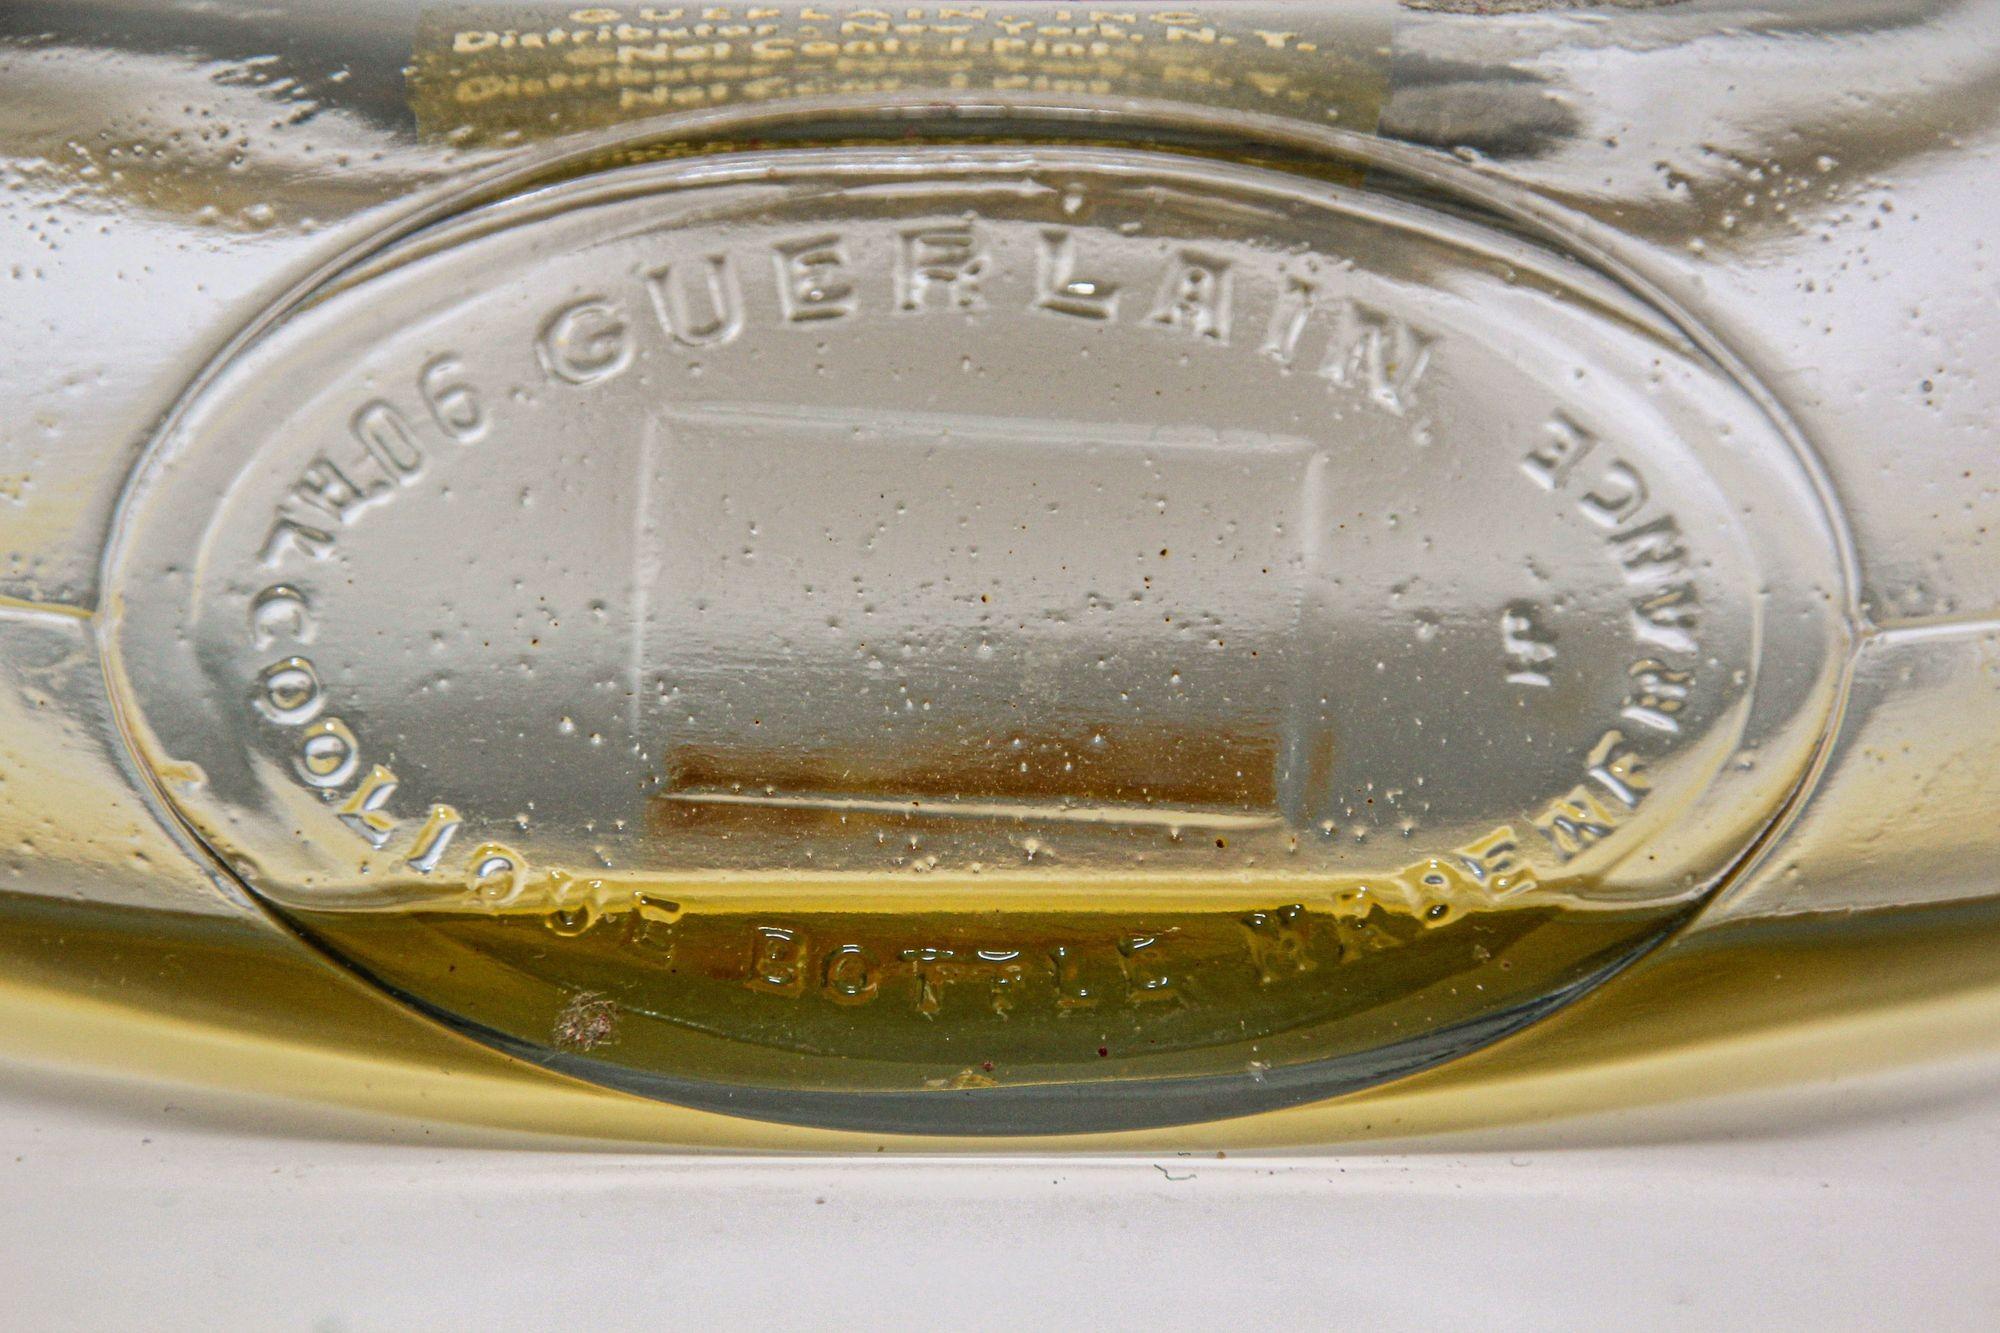 20th Century Vintage Guerlain Shalimar Cologne Perfume Bottle Large Collectible Paris France For Sale